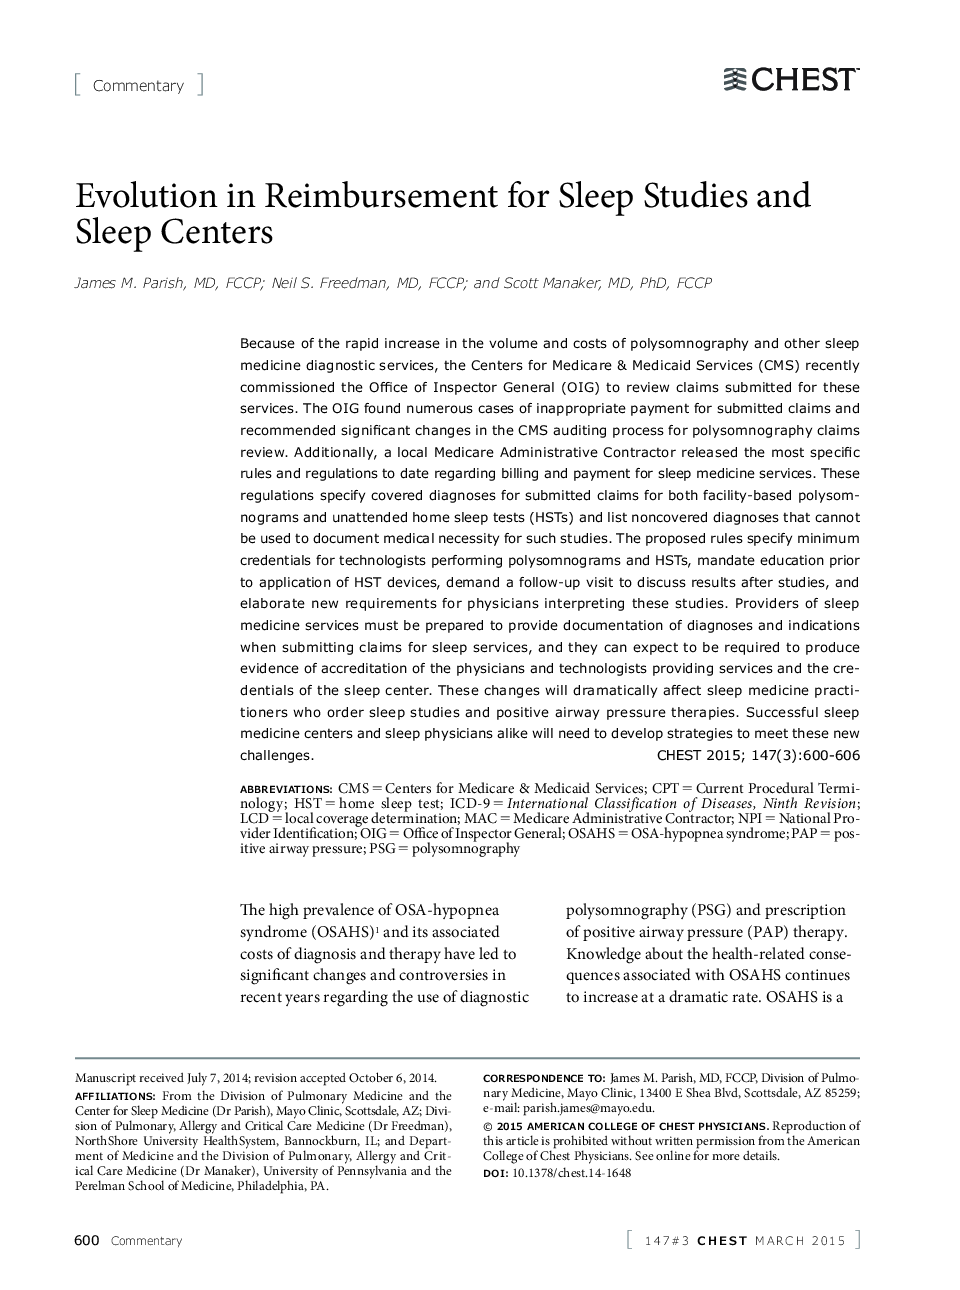 تکامل در بازپرداخت مطالعات خواب و مراکز خواب 